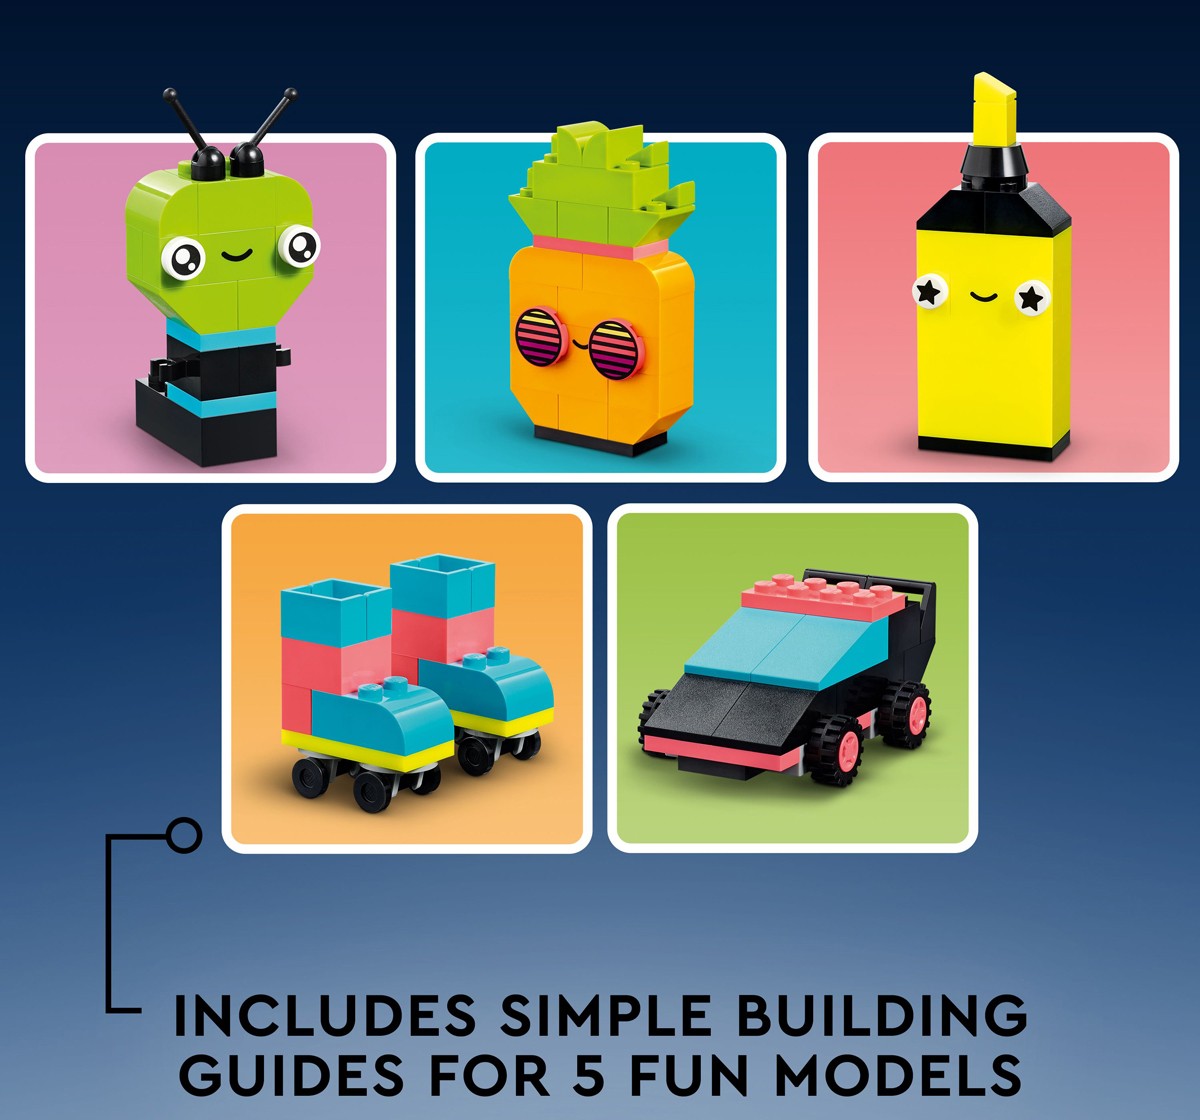 LEGO Classic Creative Neon Fun 11027 Building Toy Set 333 Pieces Multicolour 5Y+